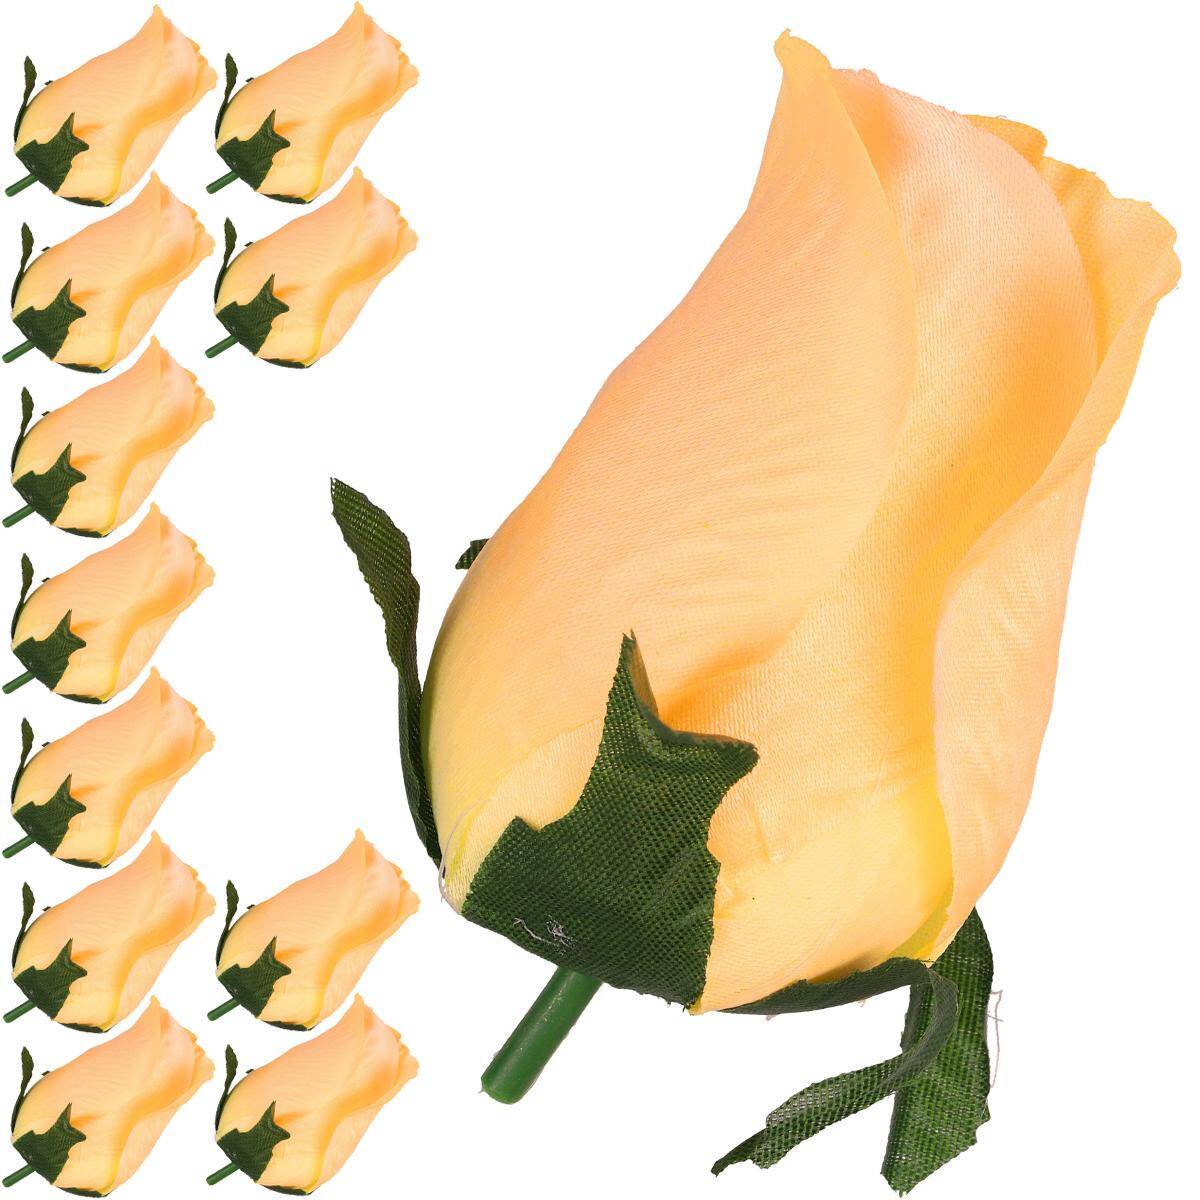 Kwiaty szt. główka pąk róża 9cm BUDYNIOW (Zdjęcie 1)